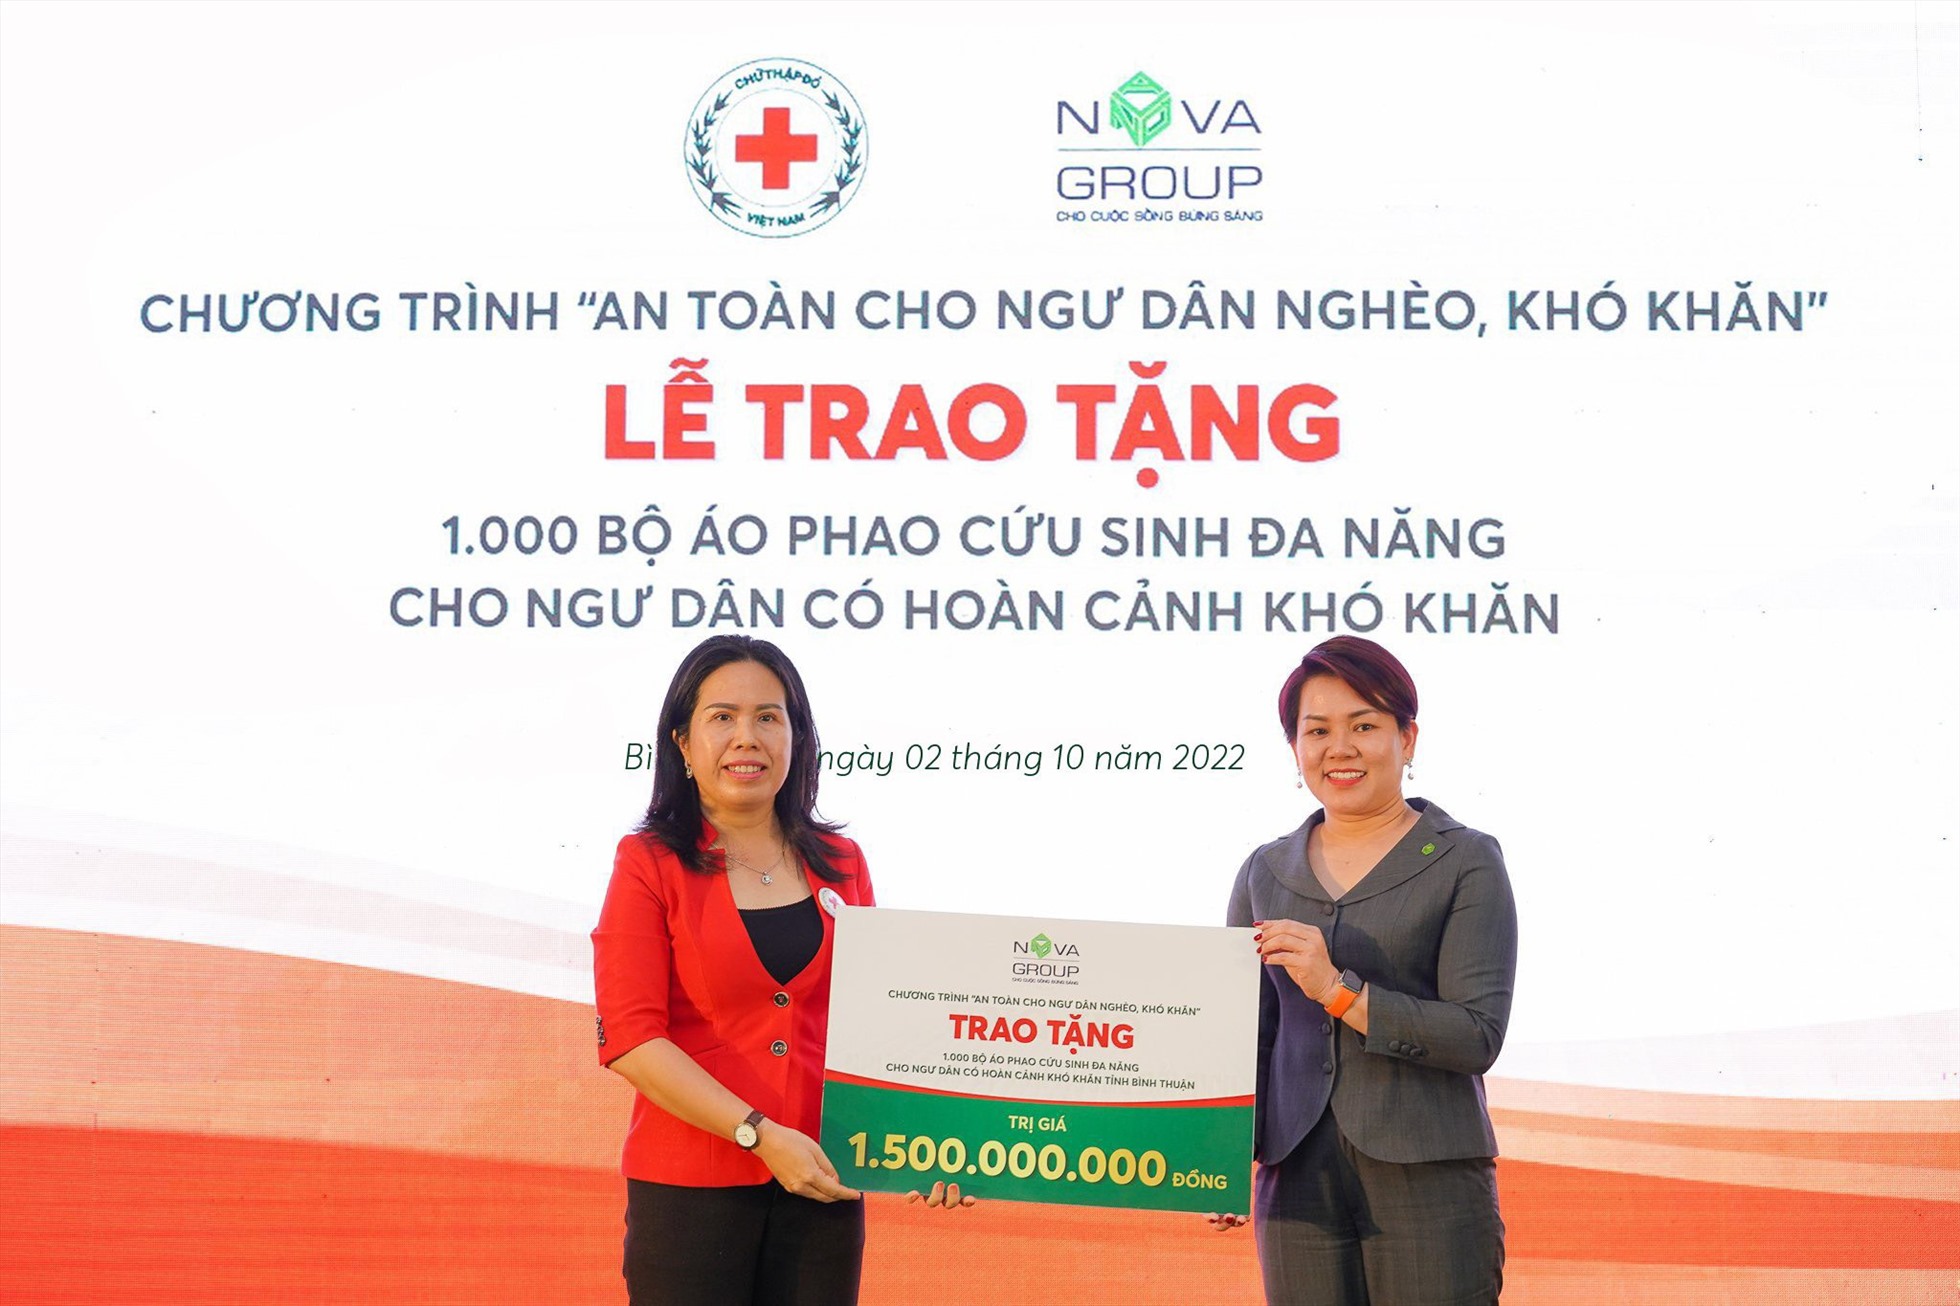 Bà Nguyễn Thị Thanh Nhàn, Chủ tịch Hội Chữ thập đỏ tỉnh Bình Thuận nhận bảng tài trợ từ đại diện NovaGroup